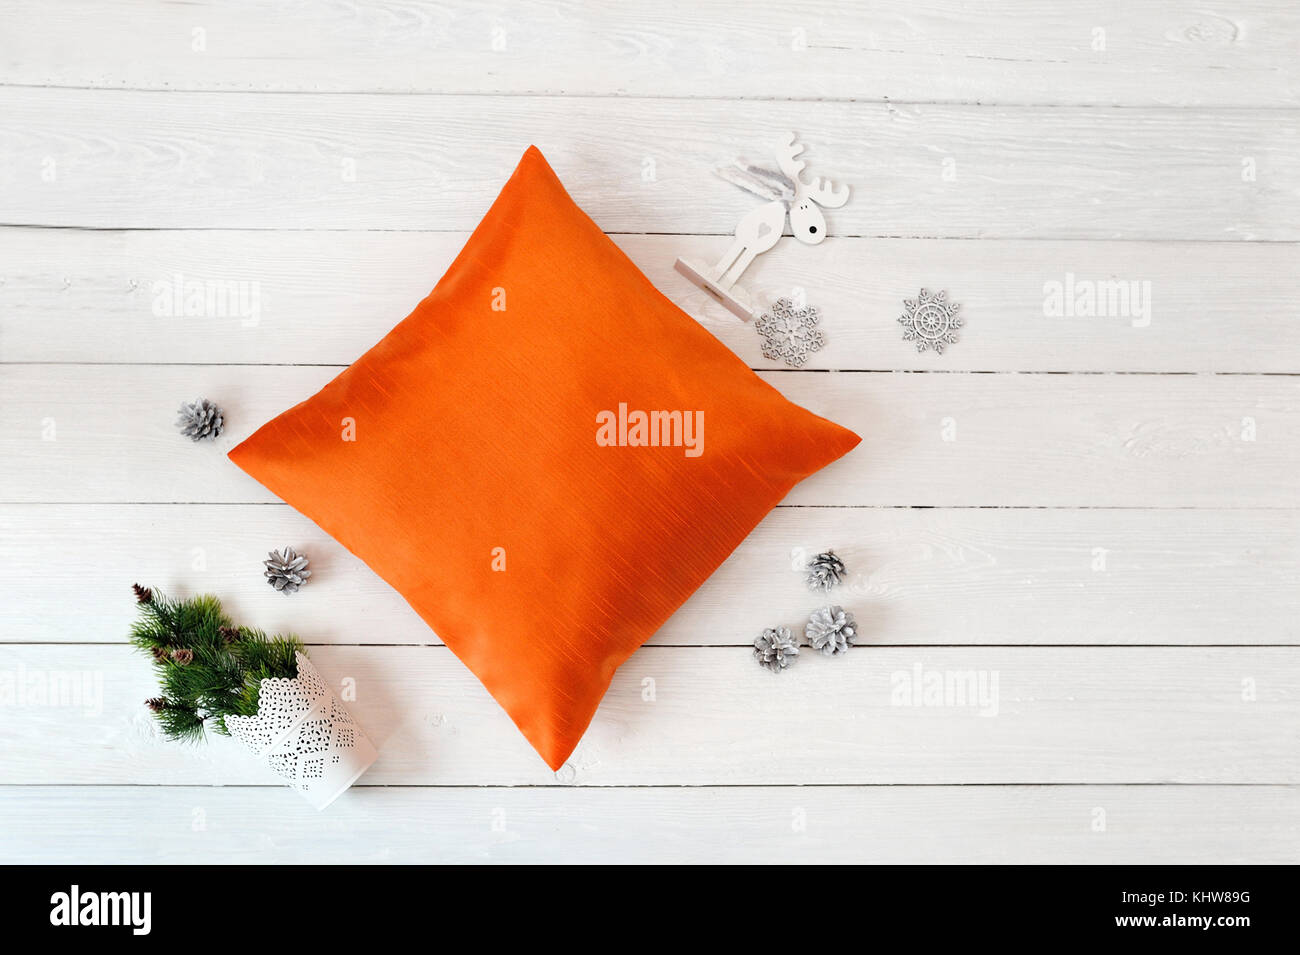 Cuscino arancione caso mockup in bianco sullo sfondo di legno. flat laico, top view photo mockup. vacanze decorazioni Foto Stock